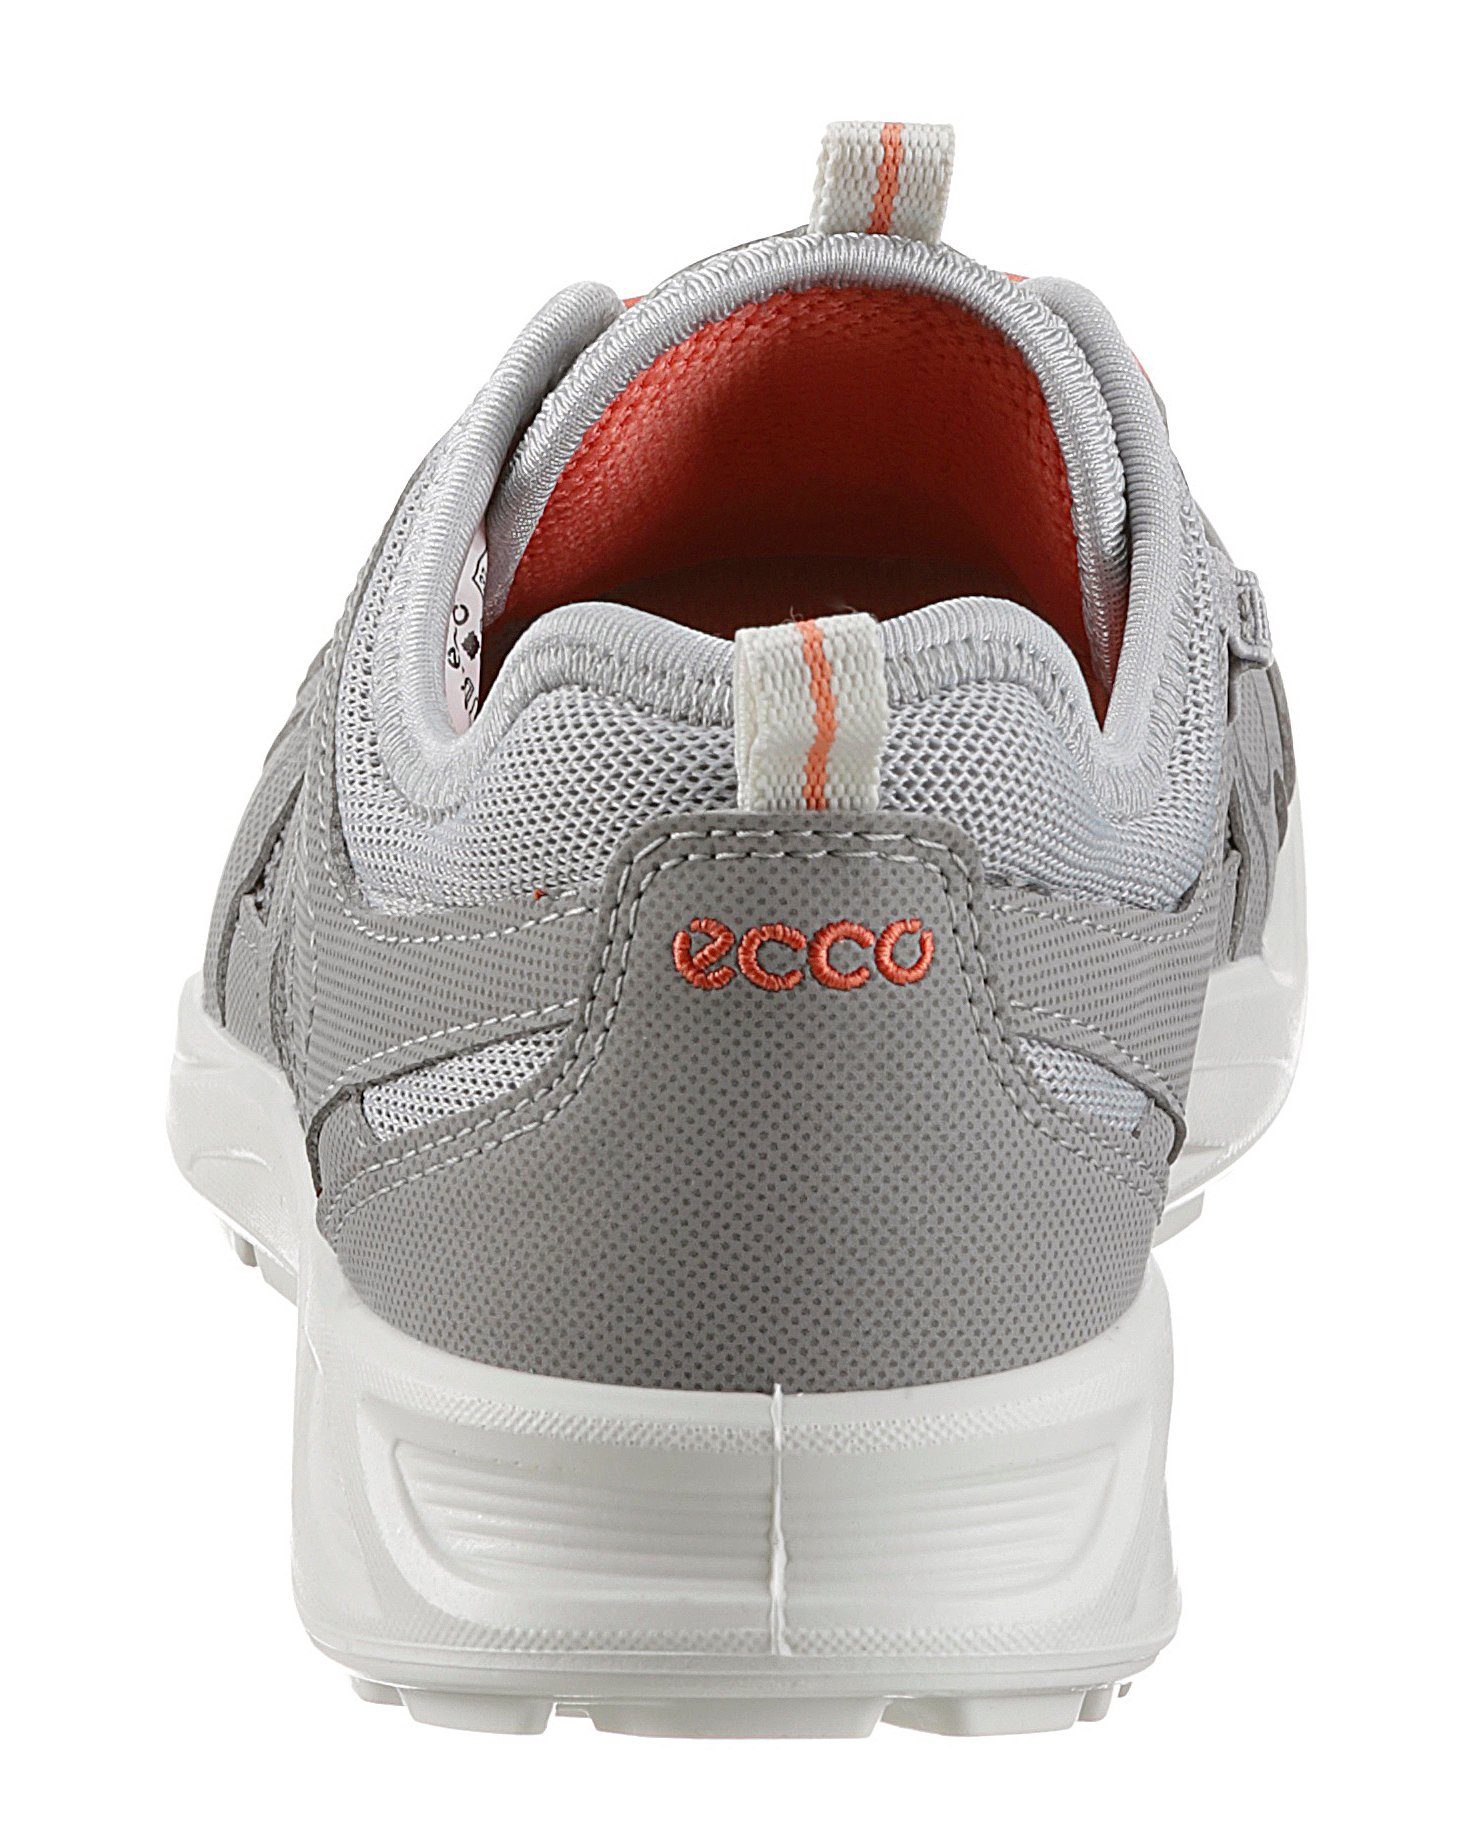 Schnellverschluss Slip-On mit silberfarben Ecco Terracruise LT Sneaker W praktischem